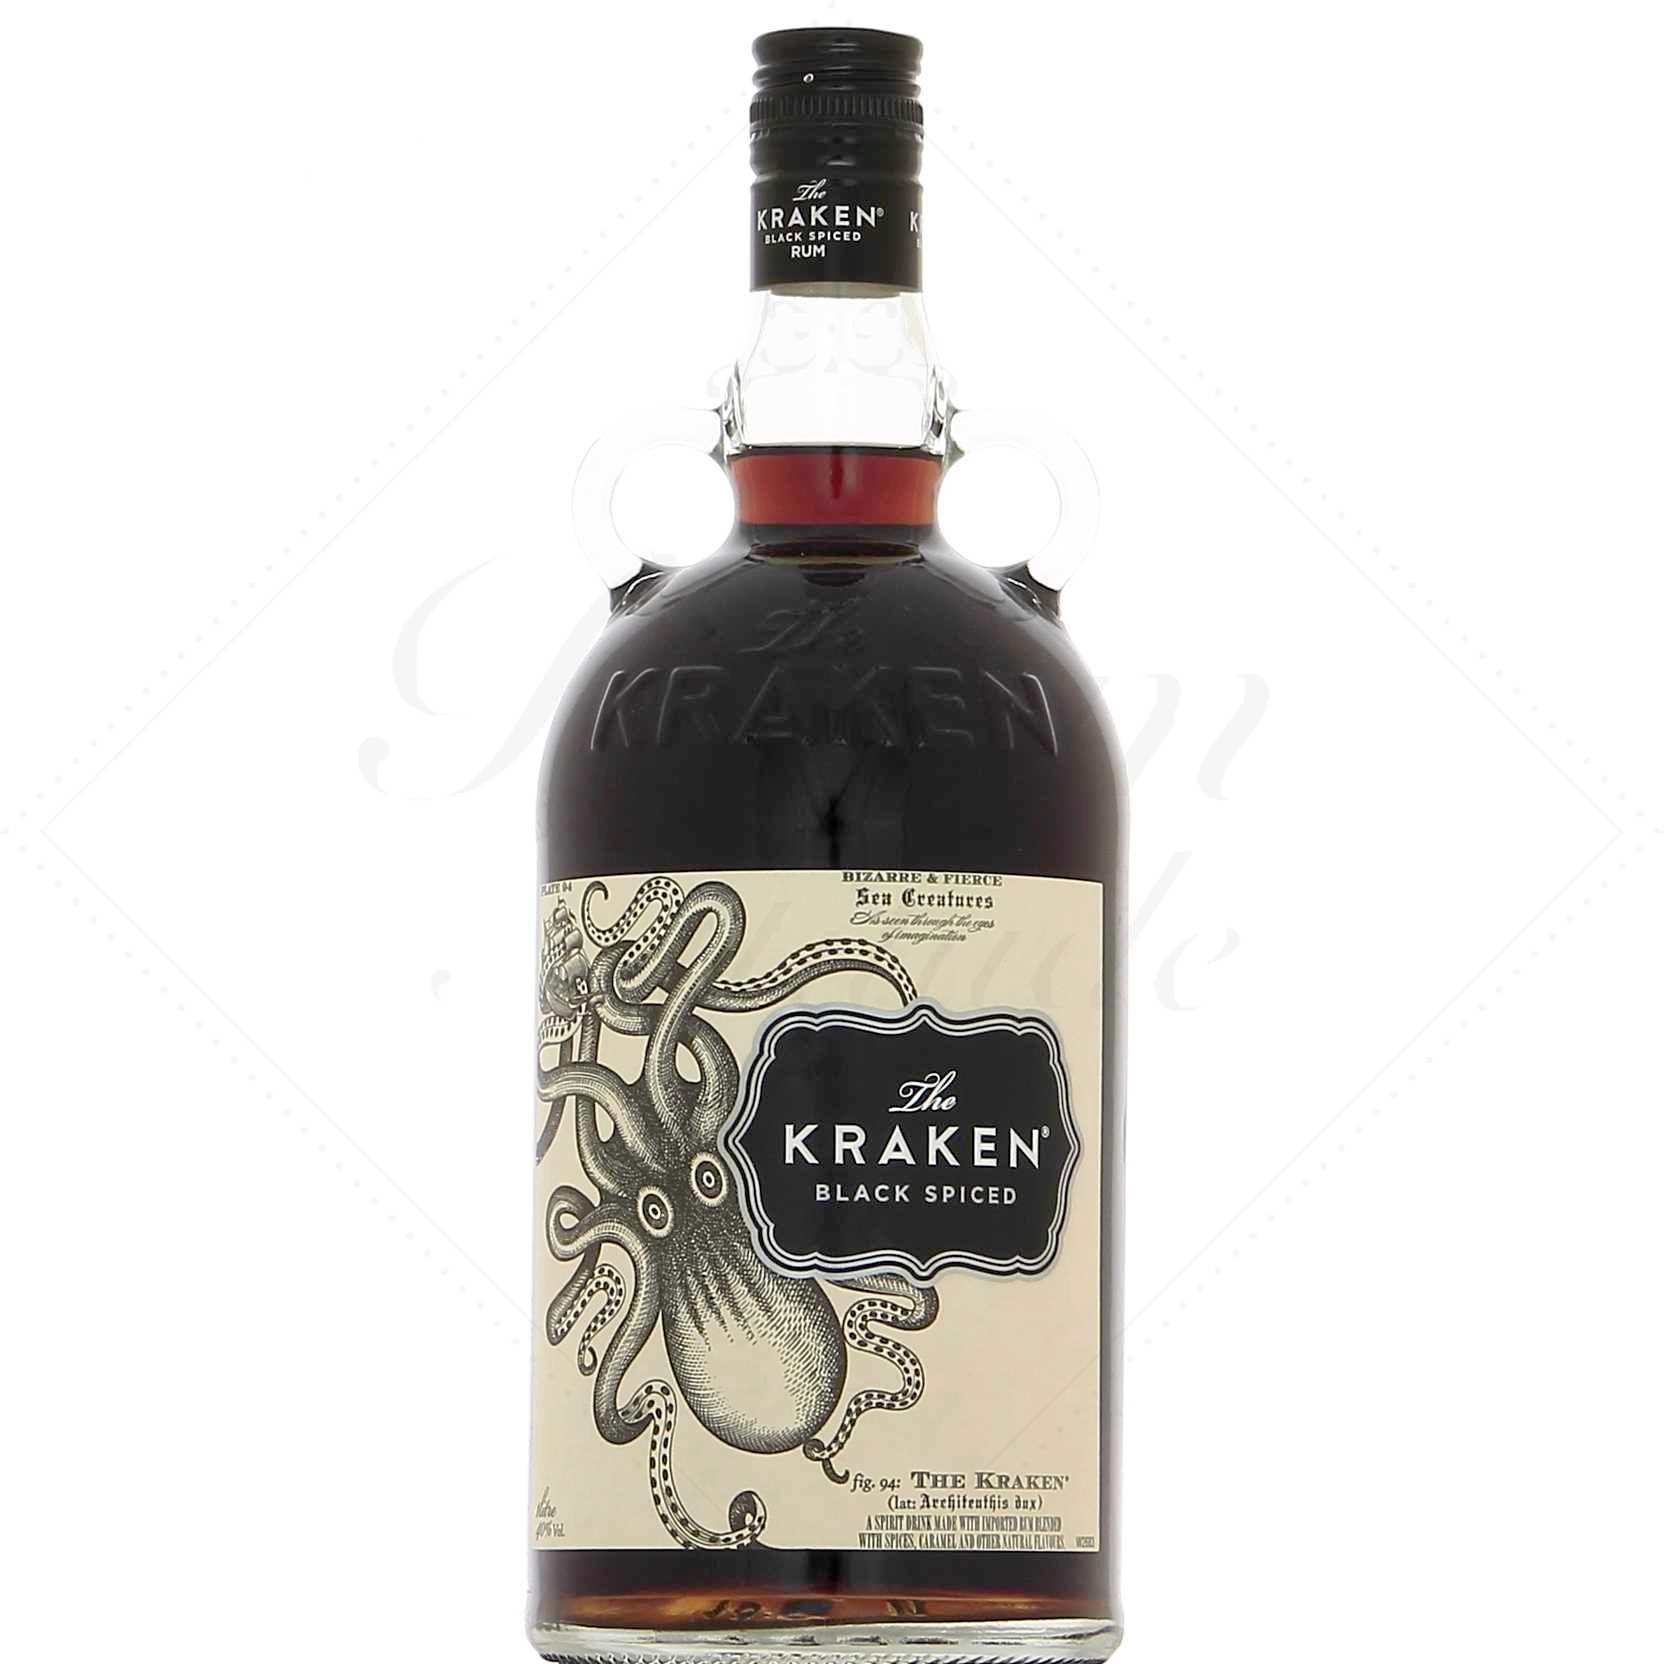 The Kraken - Black Spiced Rum 40° - Rhum - 70 cl